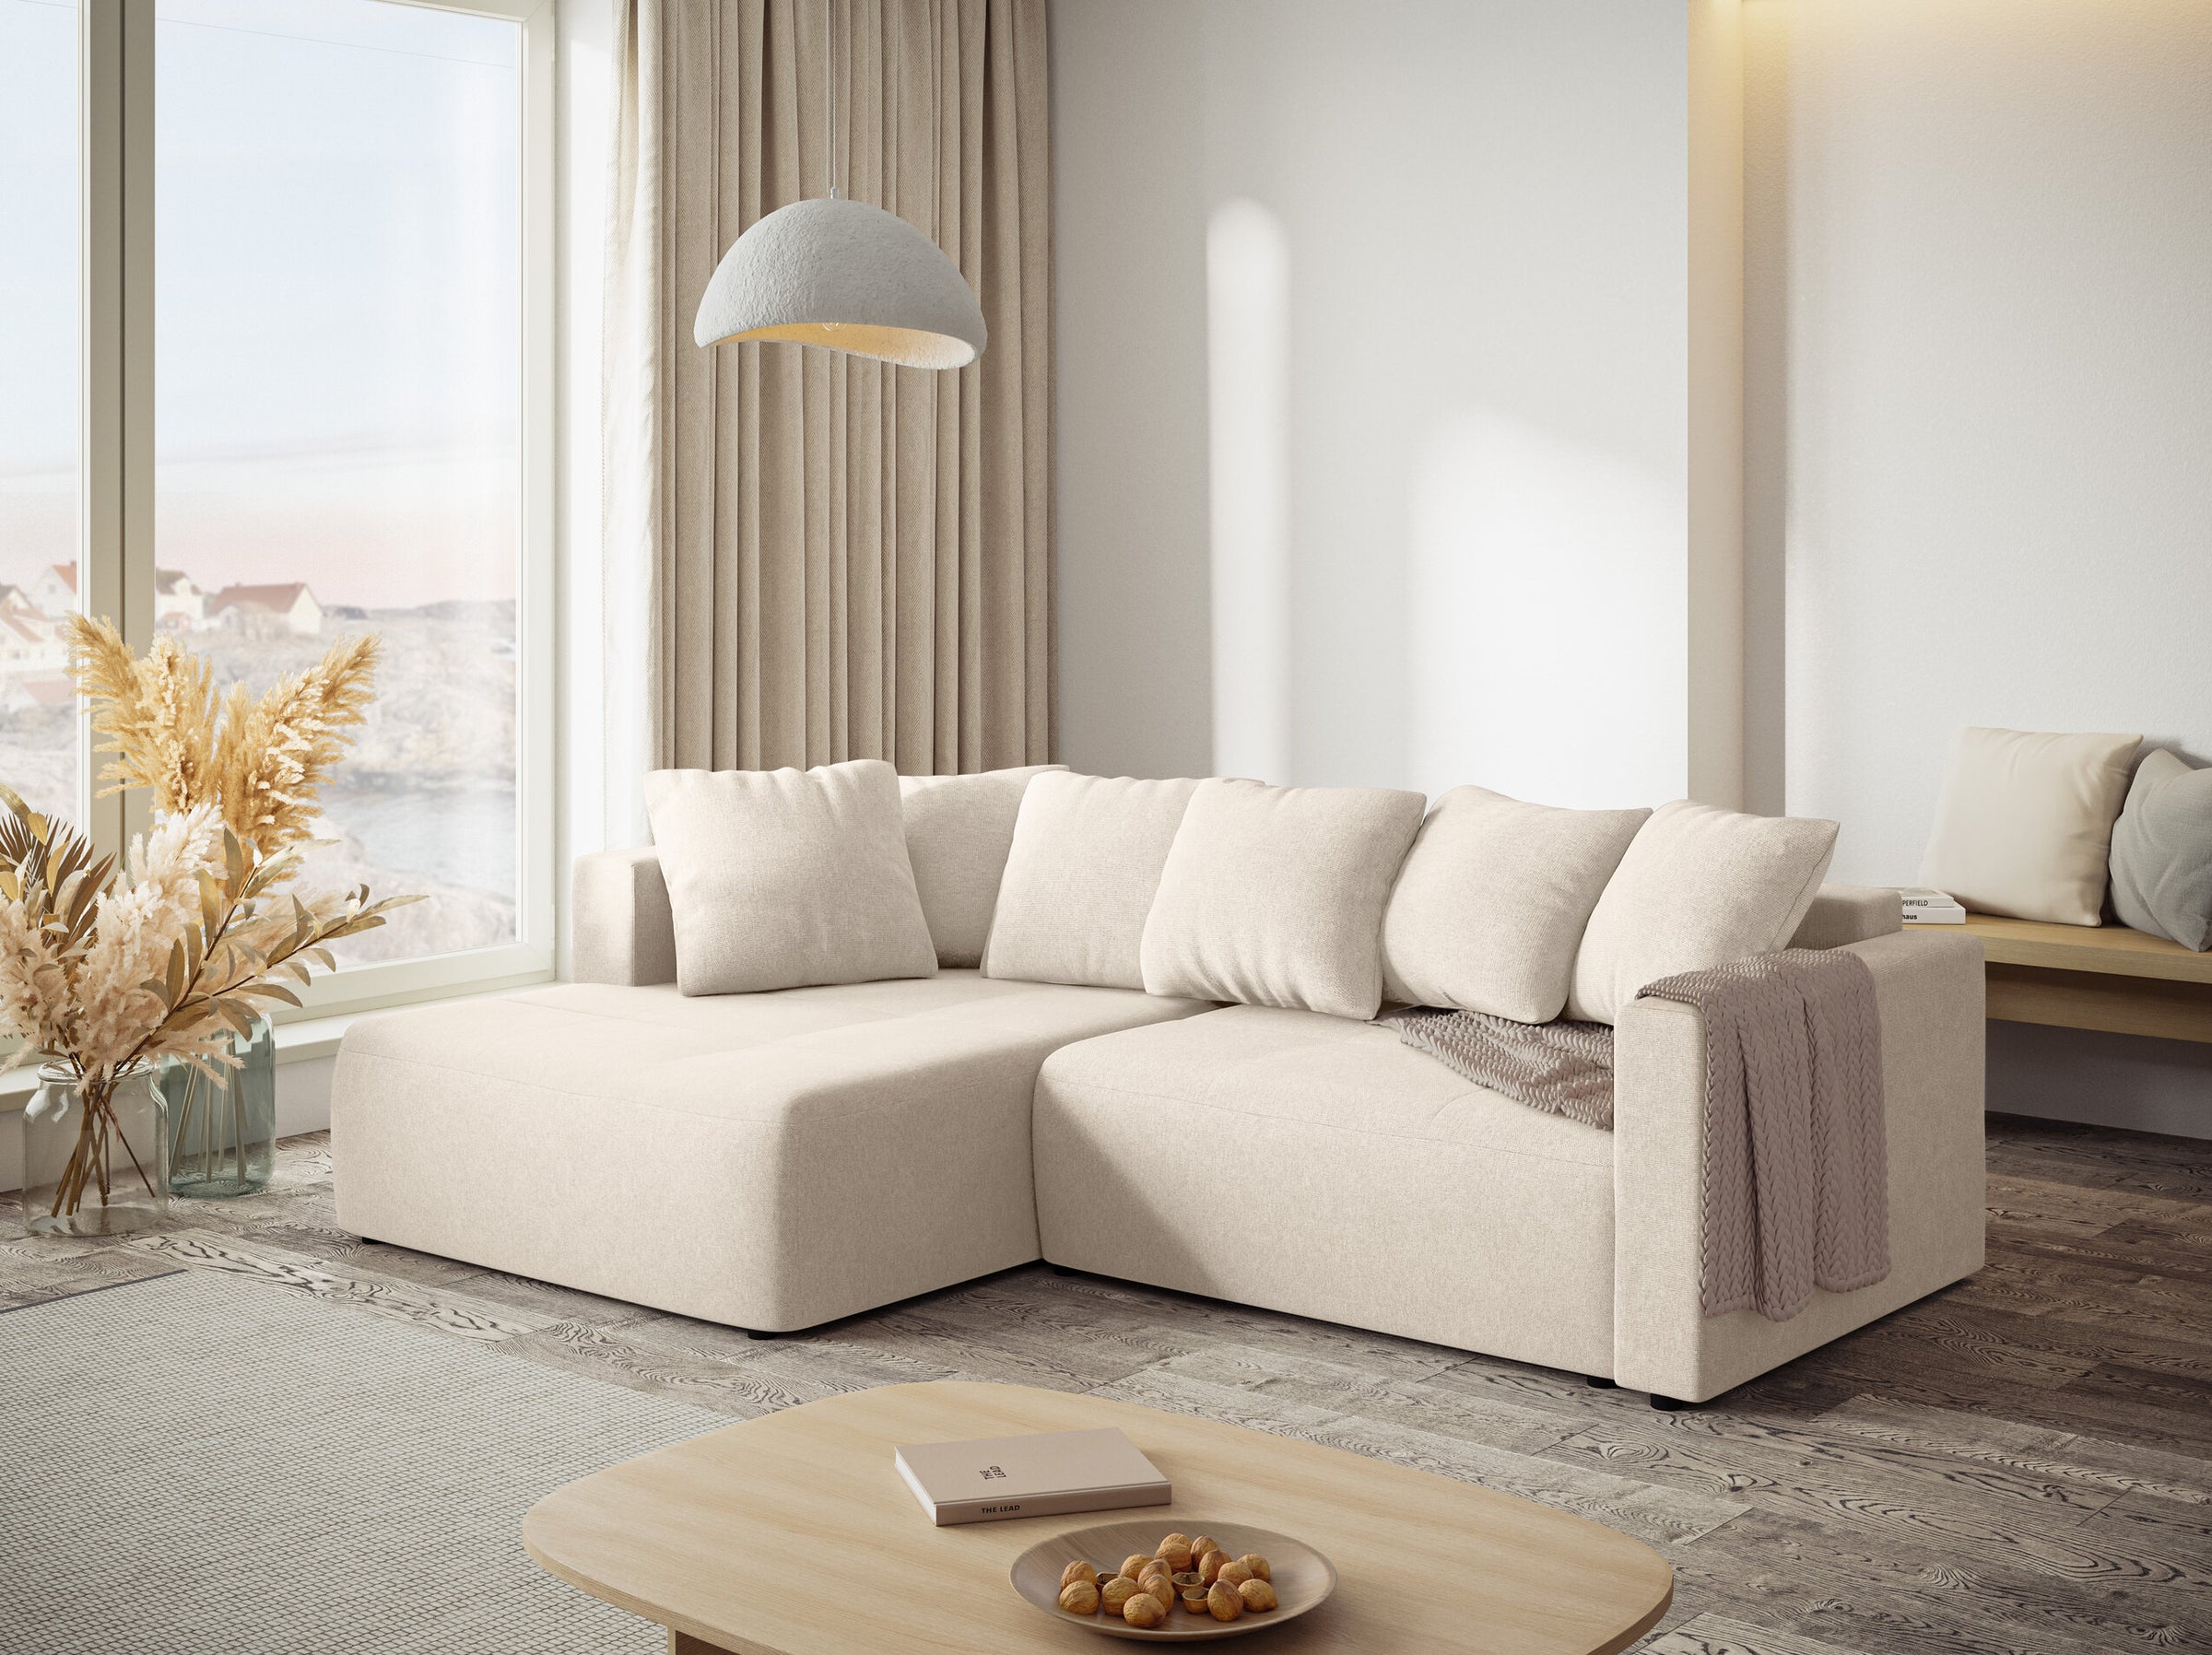 Elie sofás tejido estructurado beige